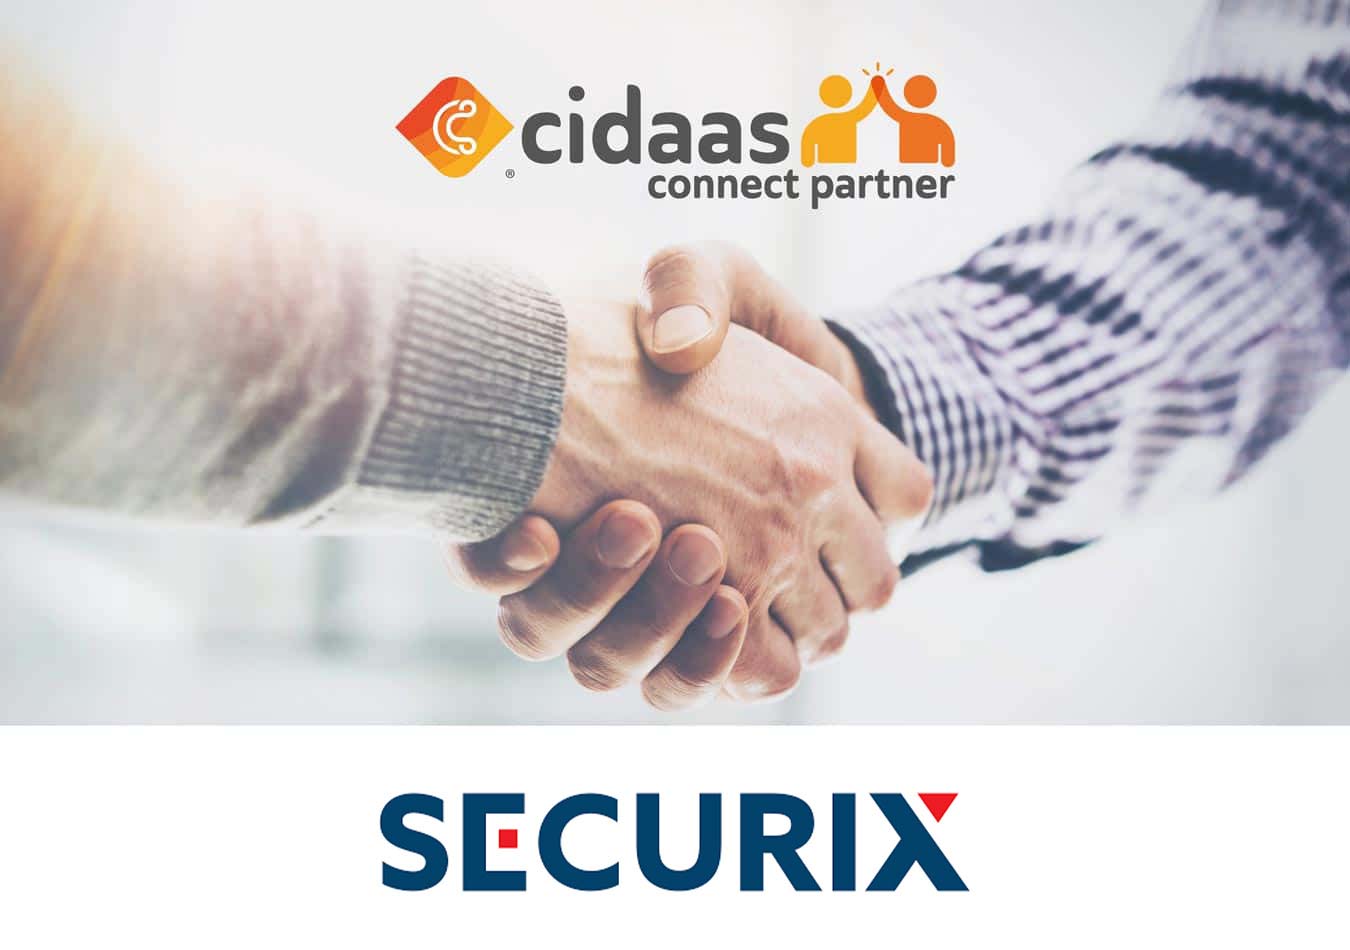 Ganzheitliches Identitätsmanagement, einfache Integrationen und erhöhte Informationssicherheit - SECURIX AG und cidaas schließen Partnerschaft!